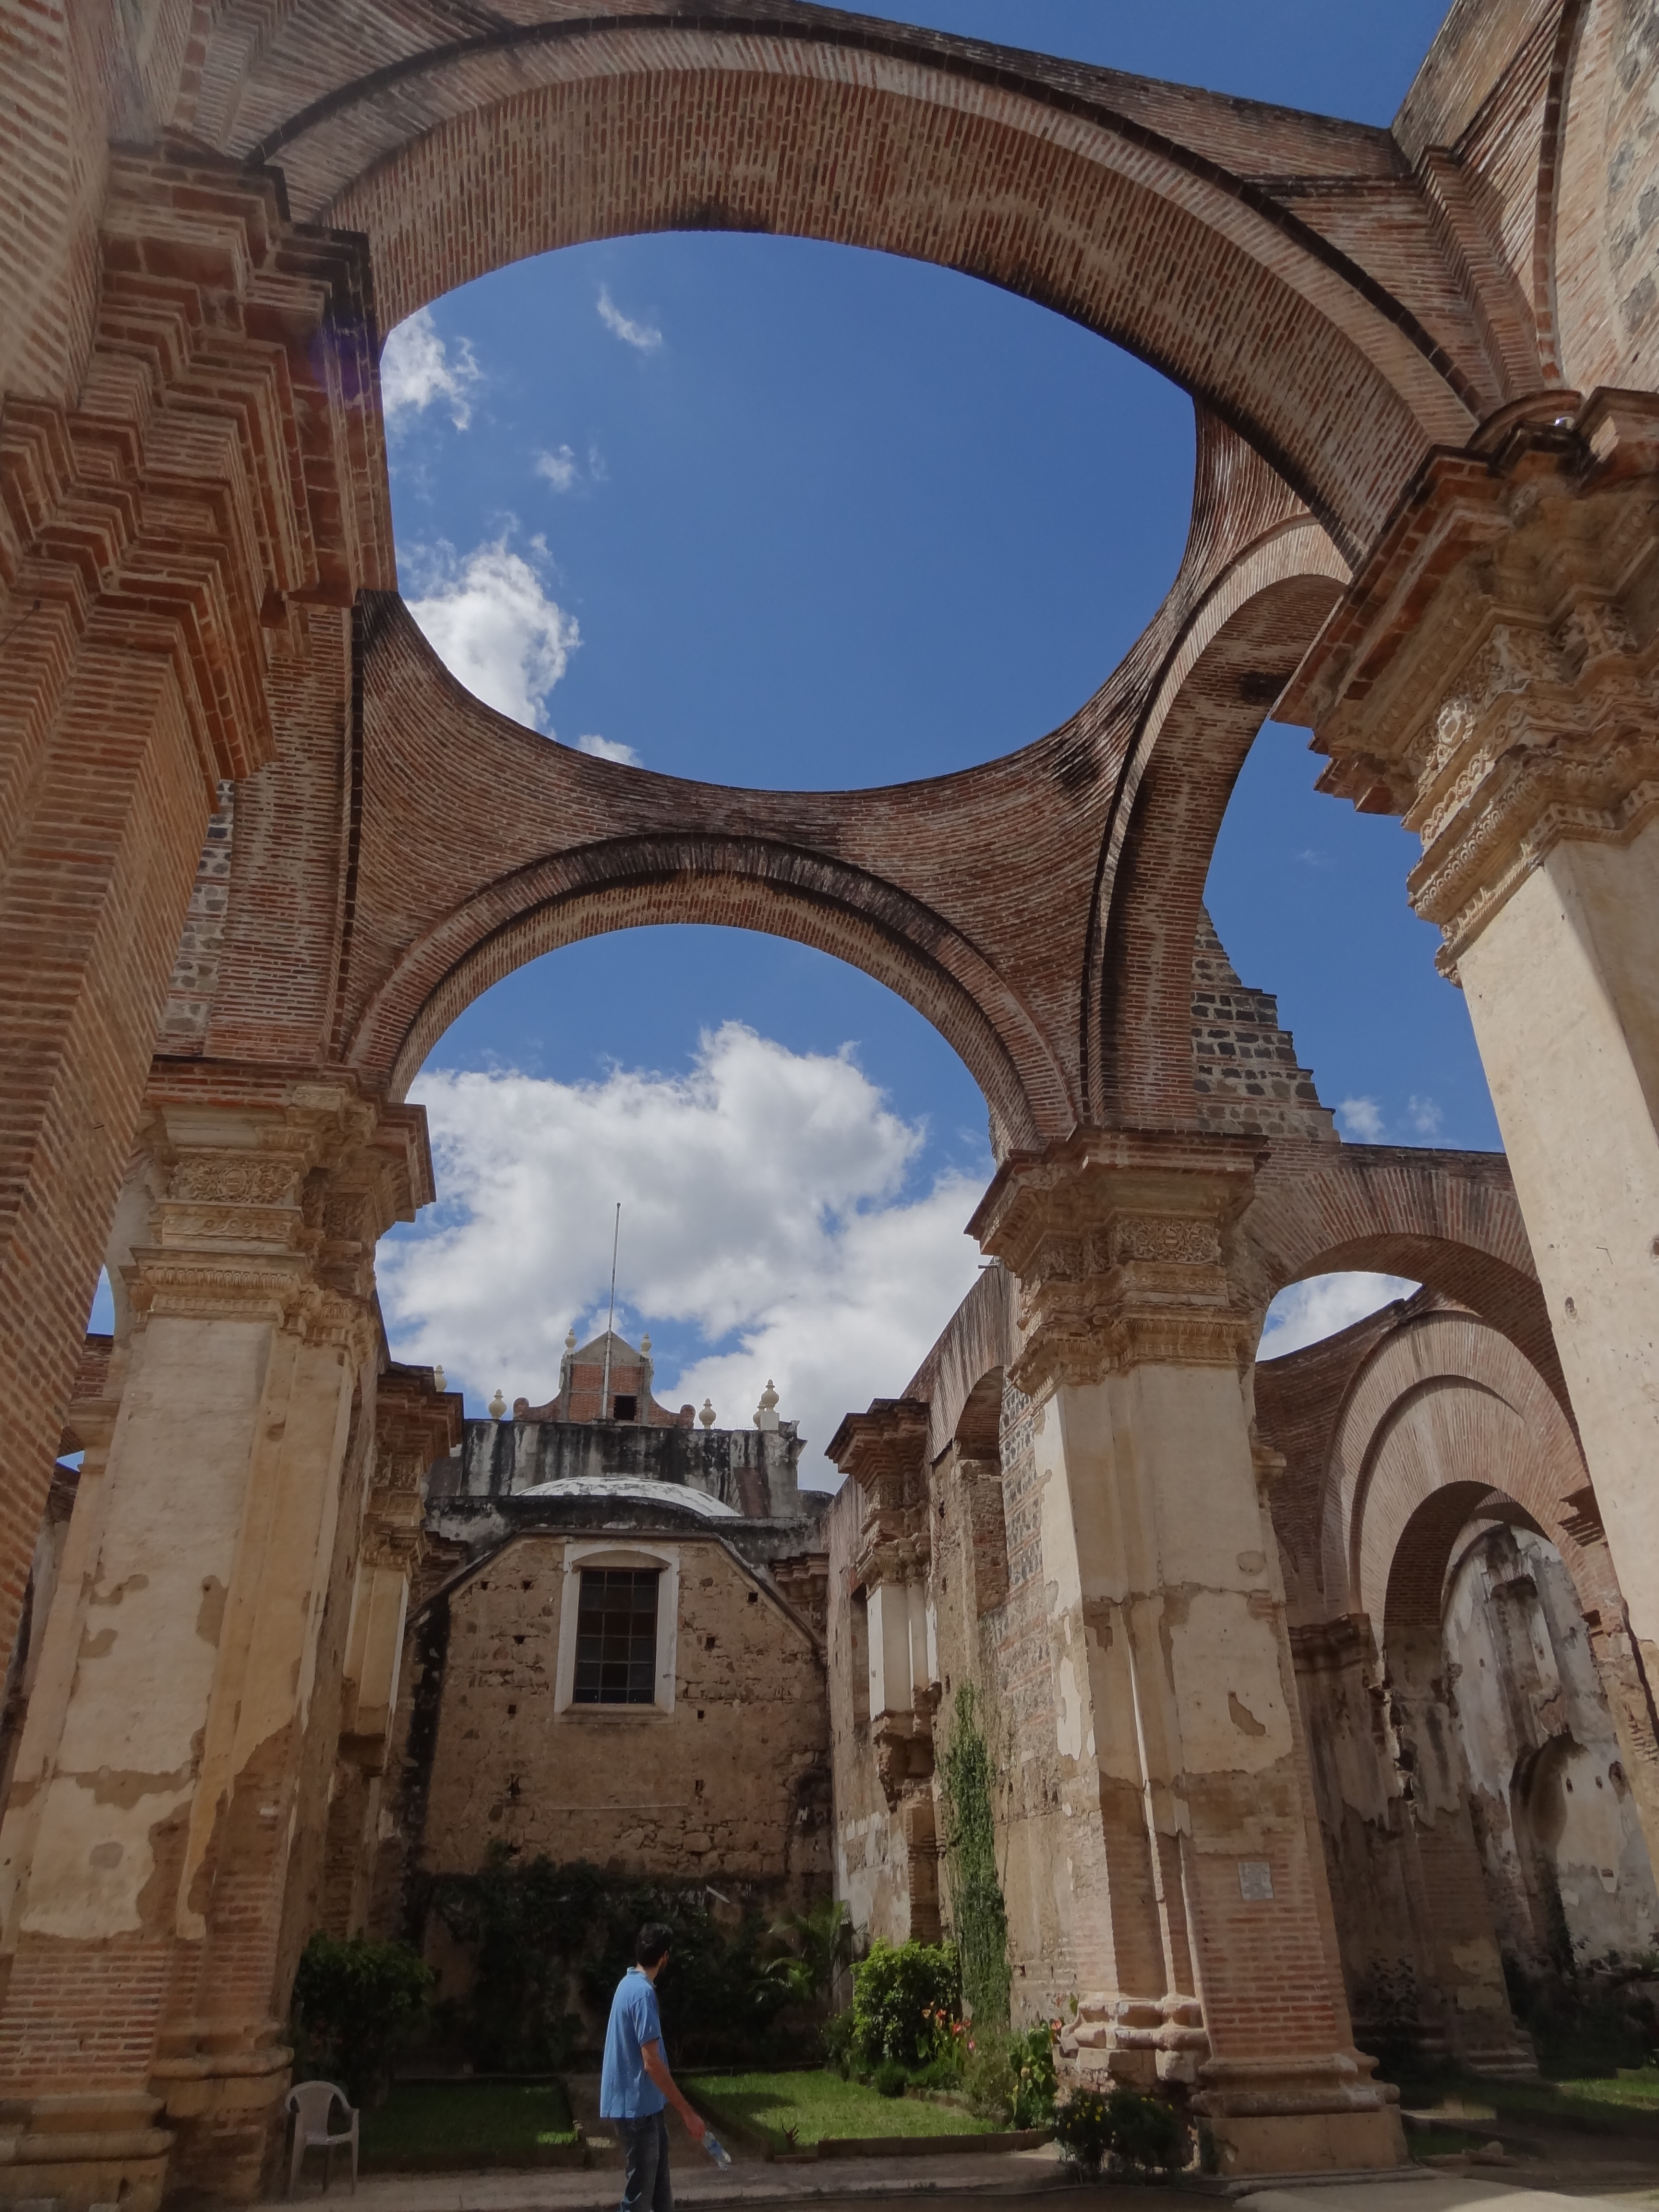 Voyage au Guatemala: La ville d'Antigua inscrite au Patrimoine de l'Unesco en partie détruite photo blog voyage tour du monde https://yoytourdumonde.fr